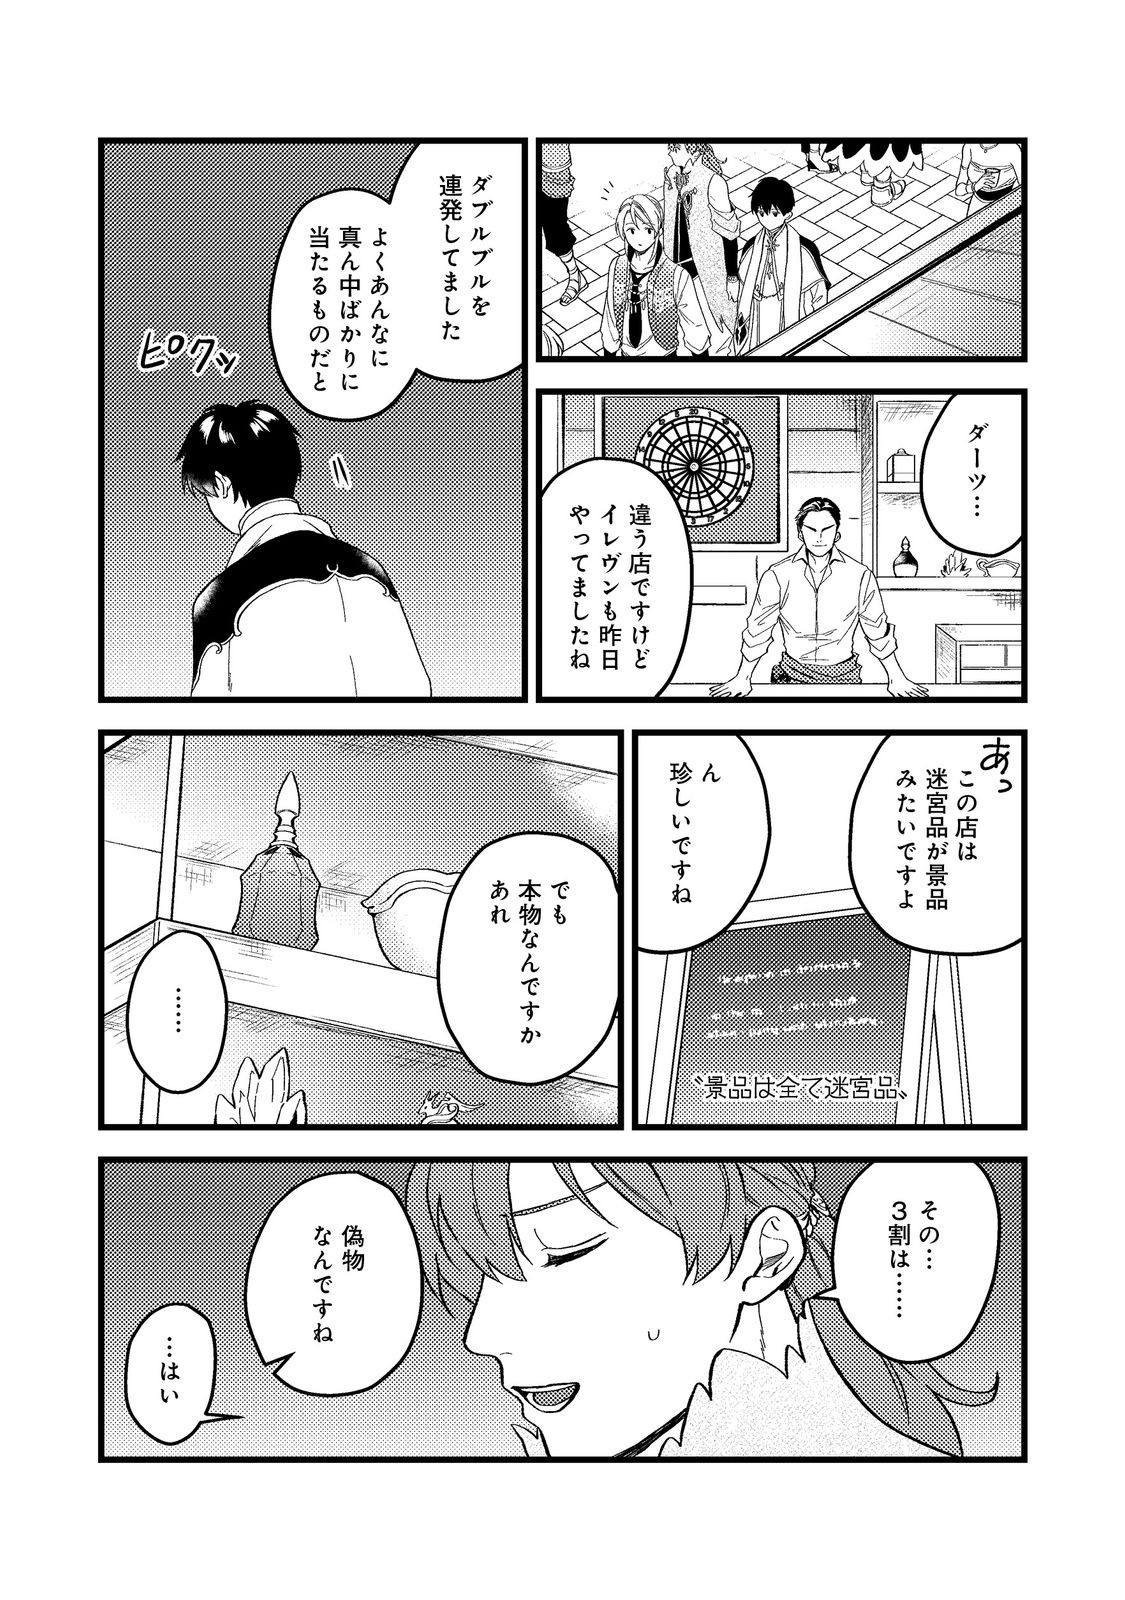 Odayaka Kizoku no Kyuuka no Susume - Chapter 45.1 - Page 9